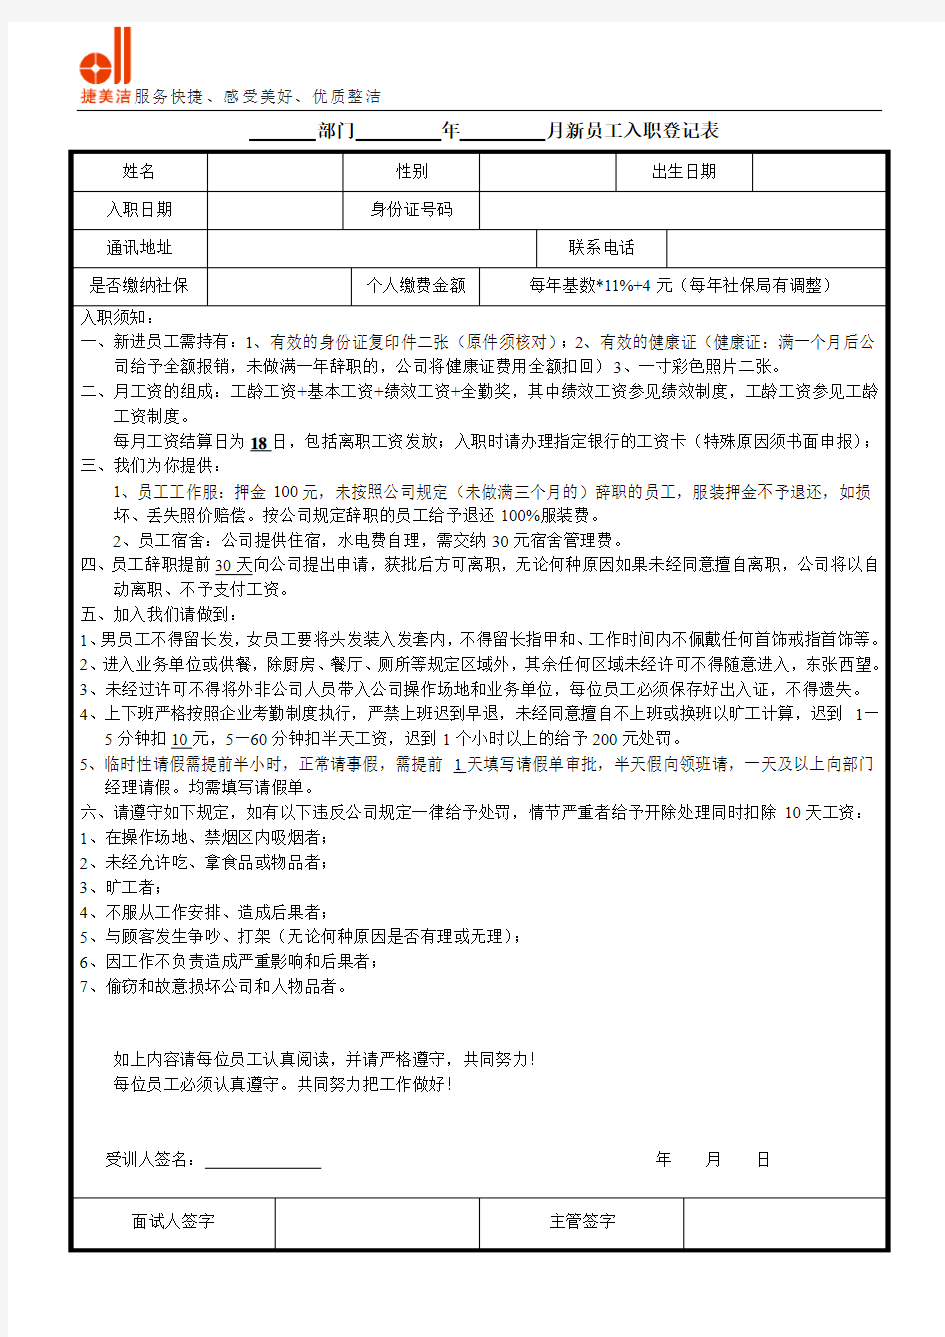 2015新版新员工入职登记表(含须知)20151027